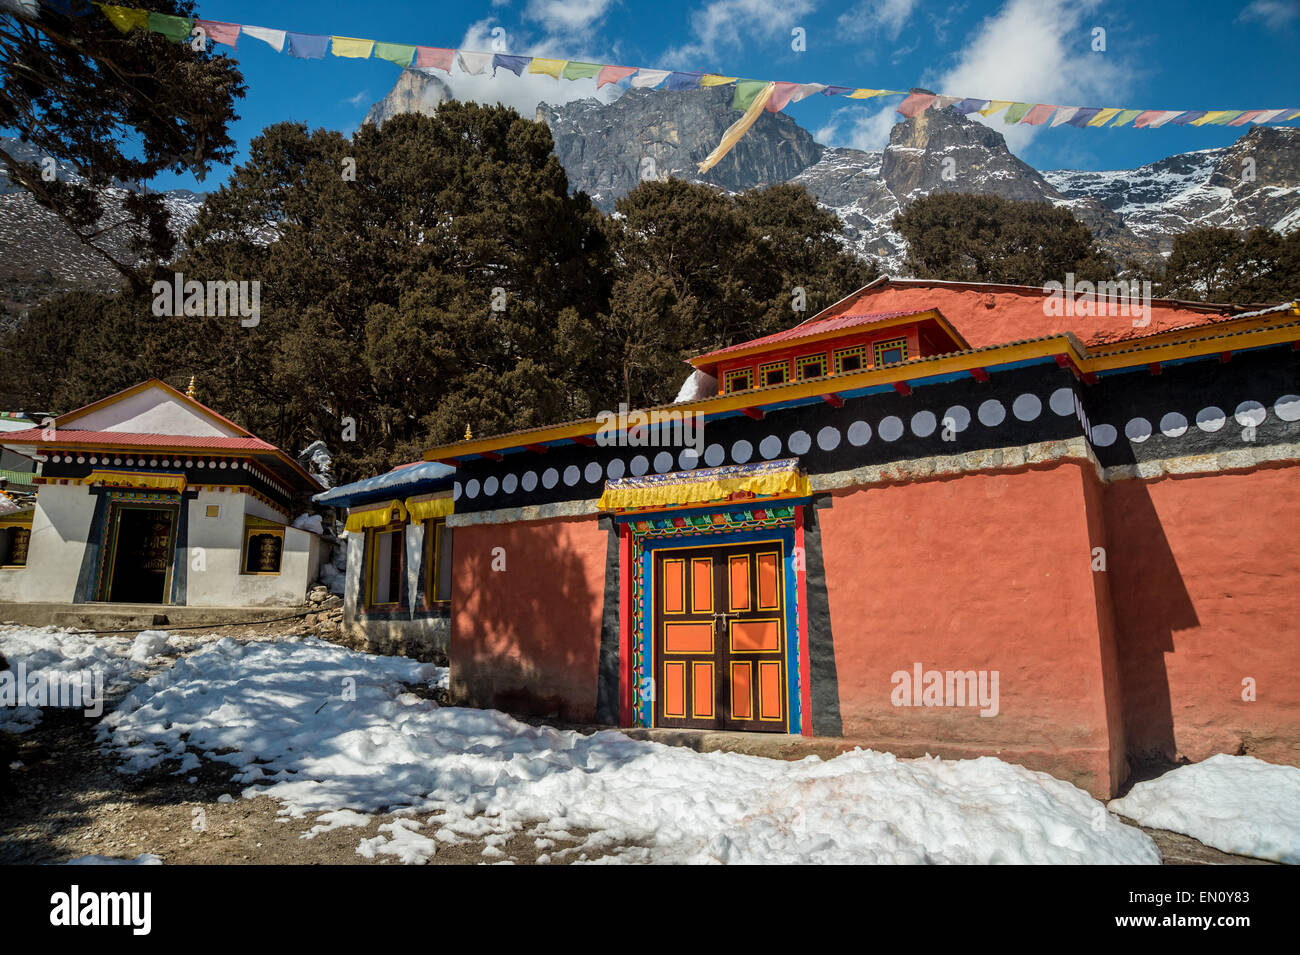 Village de Khumjung, monastère dans la région de l'Everest, au Népal Banque D'Images